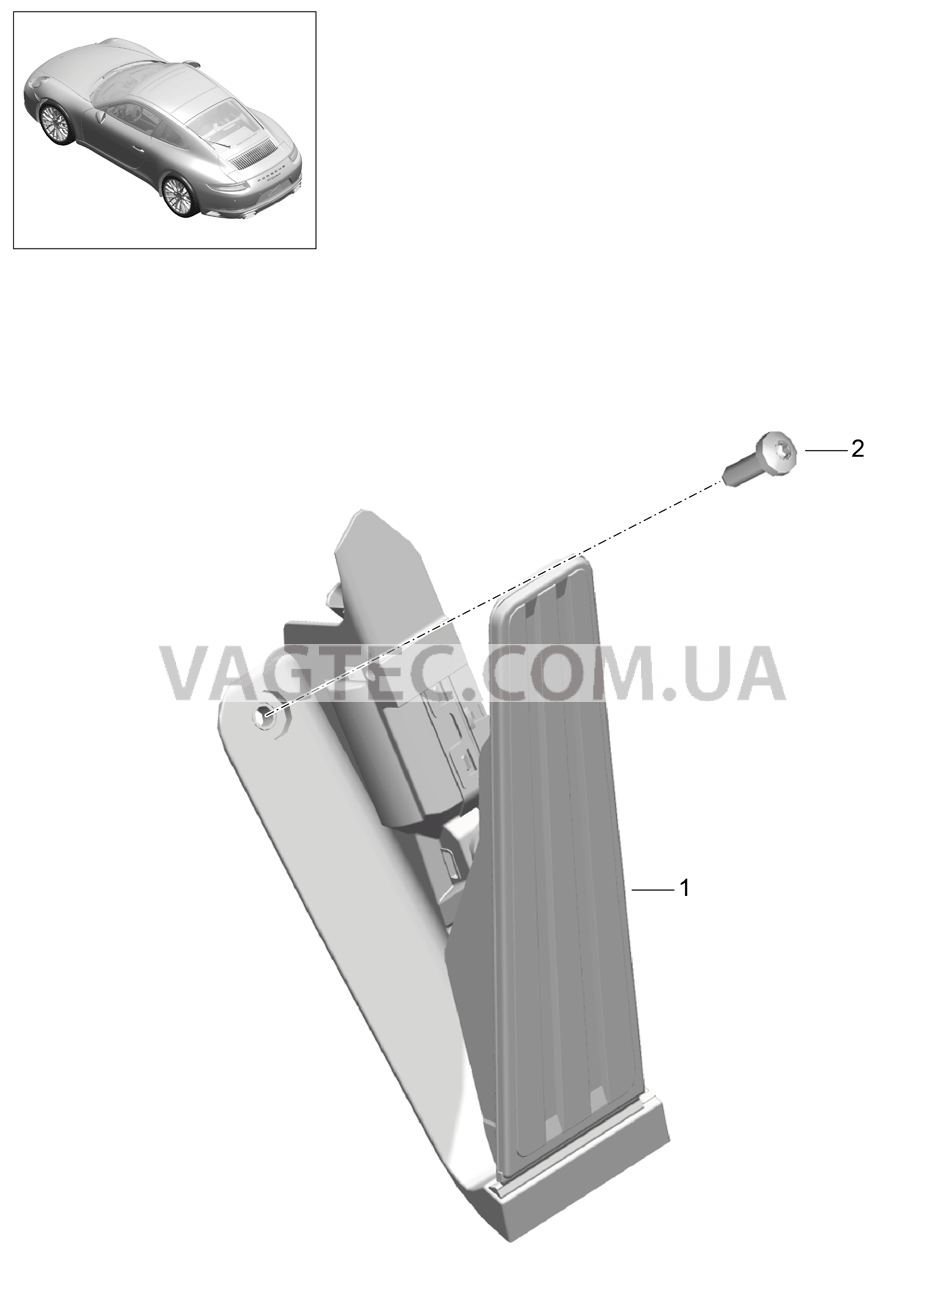 702-010 Педальный механизм, Привод акселератора для PORSCHE 911.Carrera 2017-2018